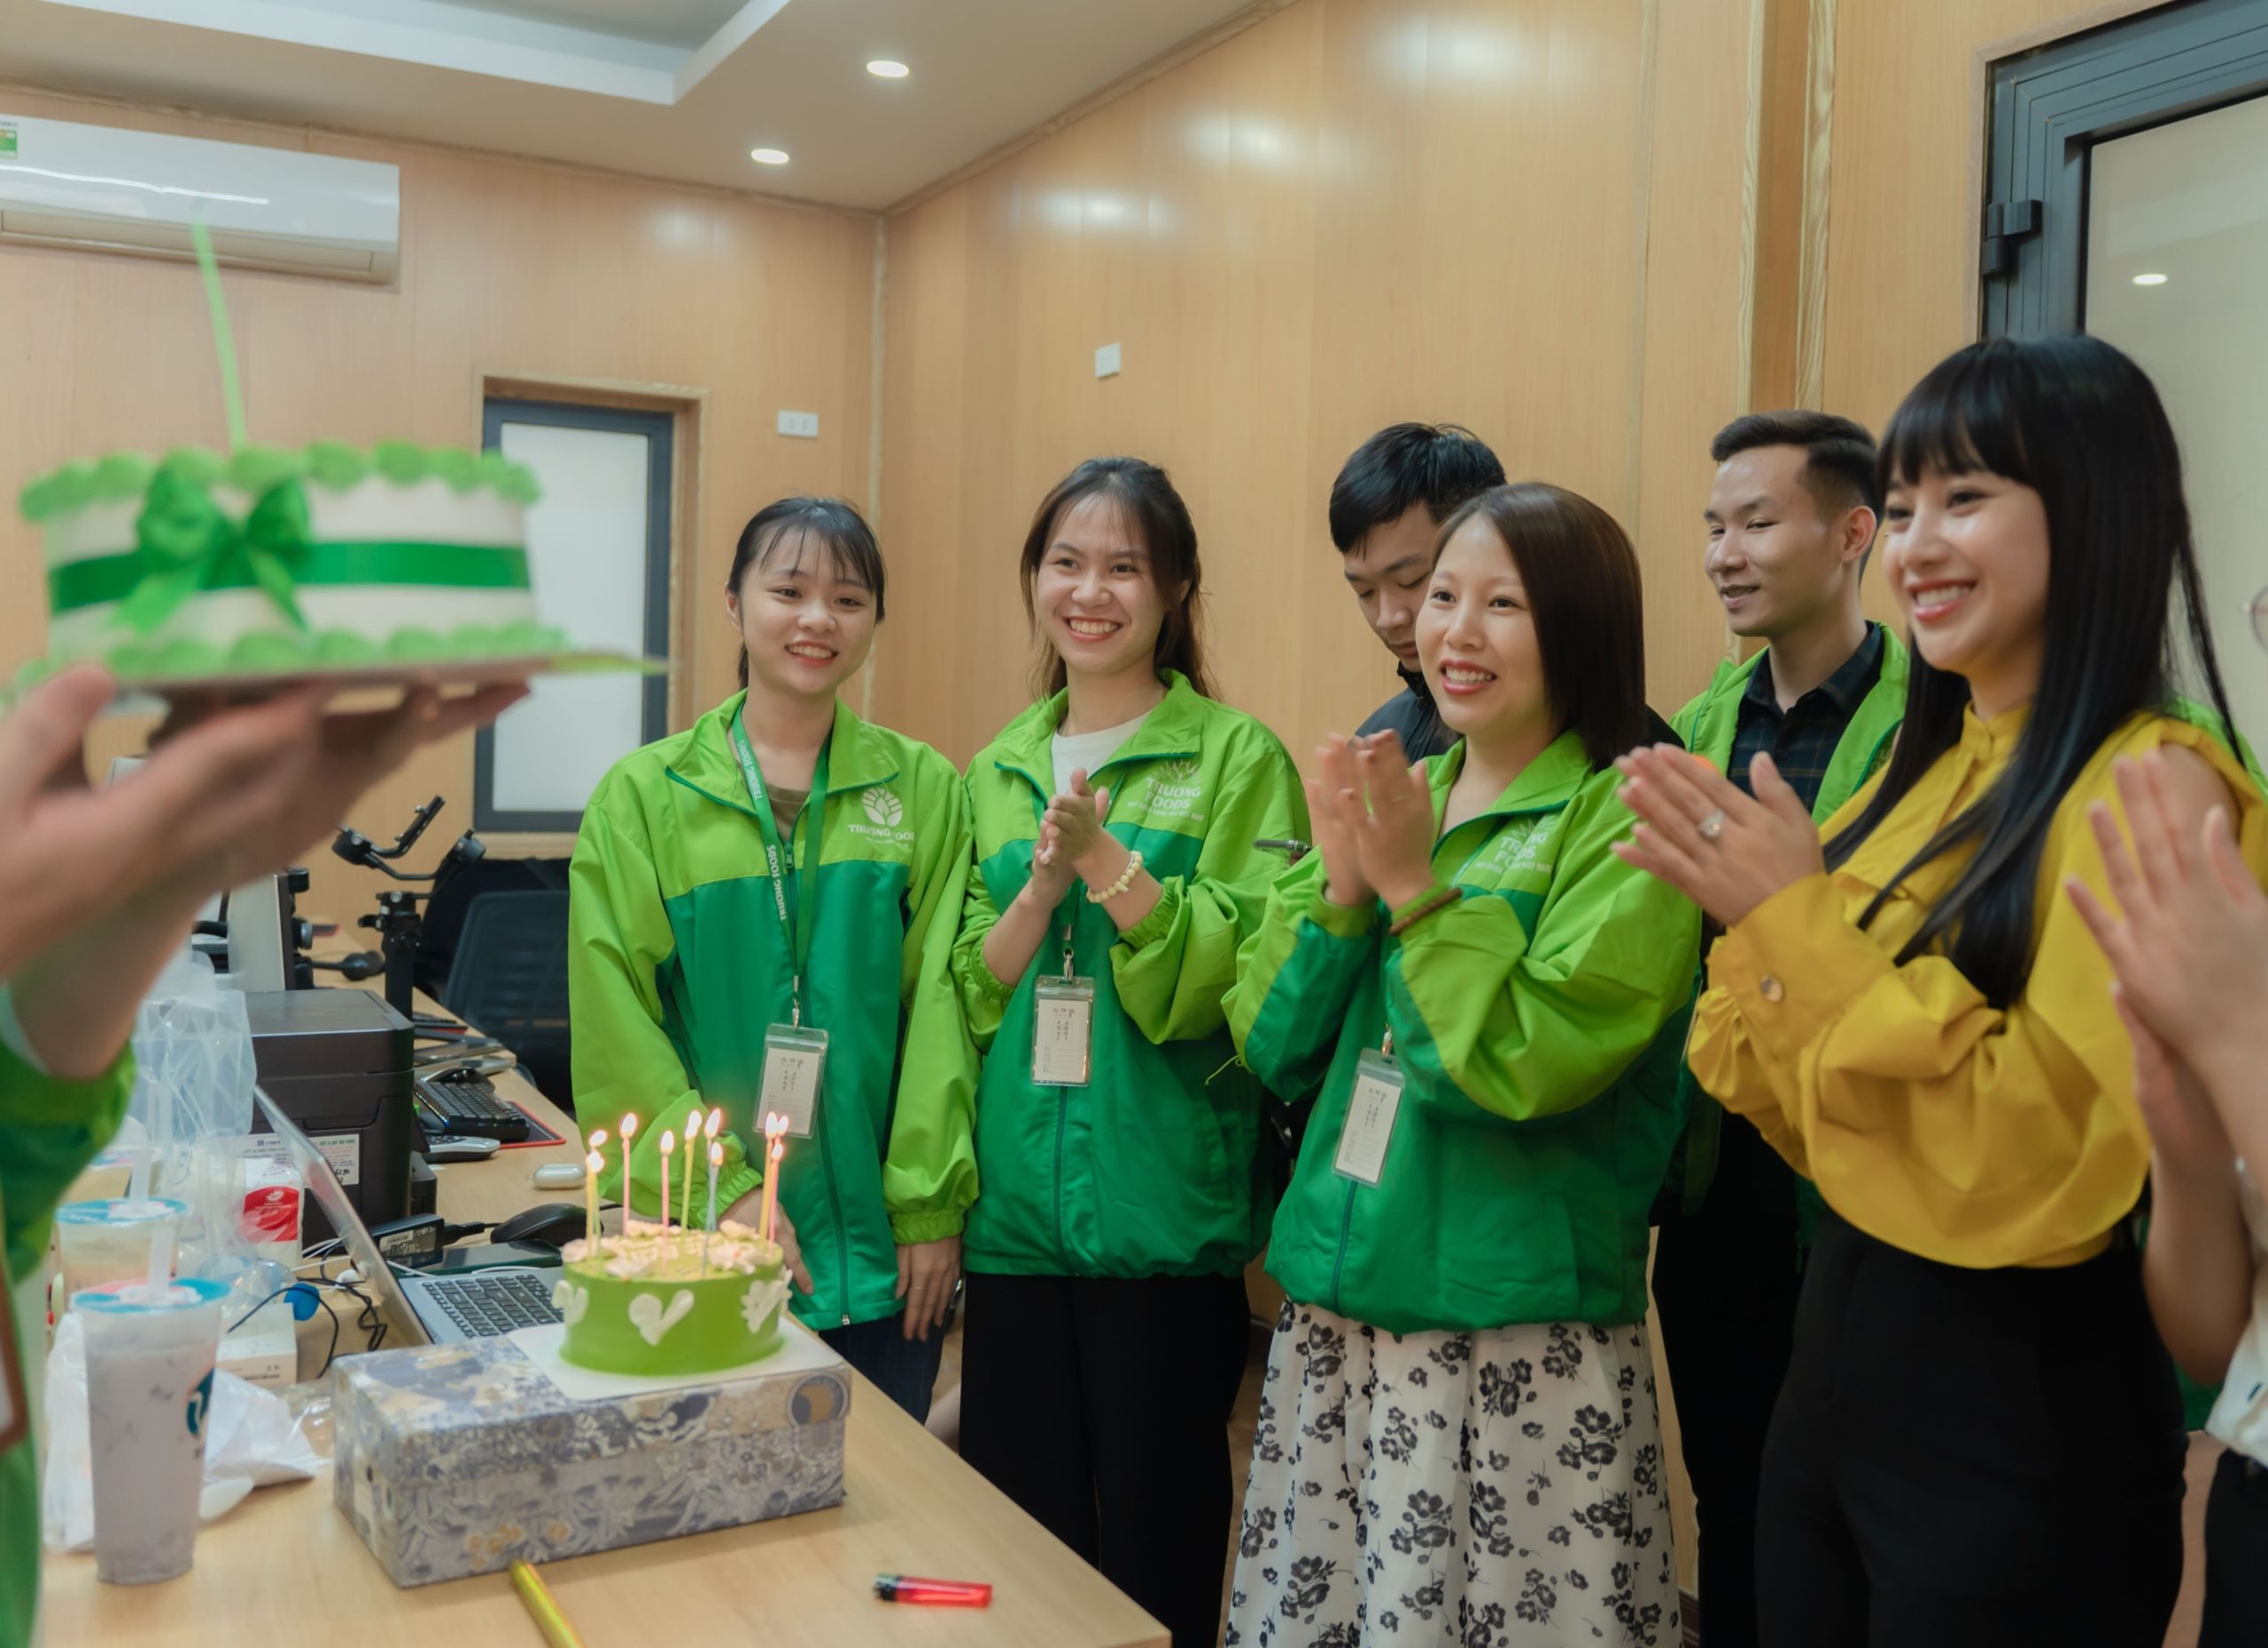 công ty tổ chức sinh nhật cho nhân viên